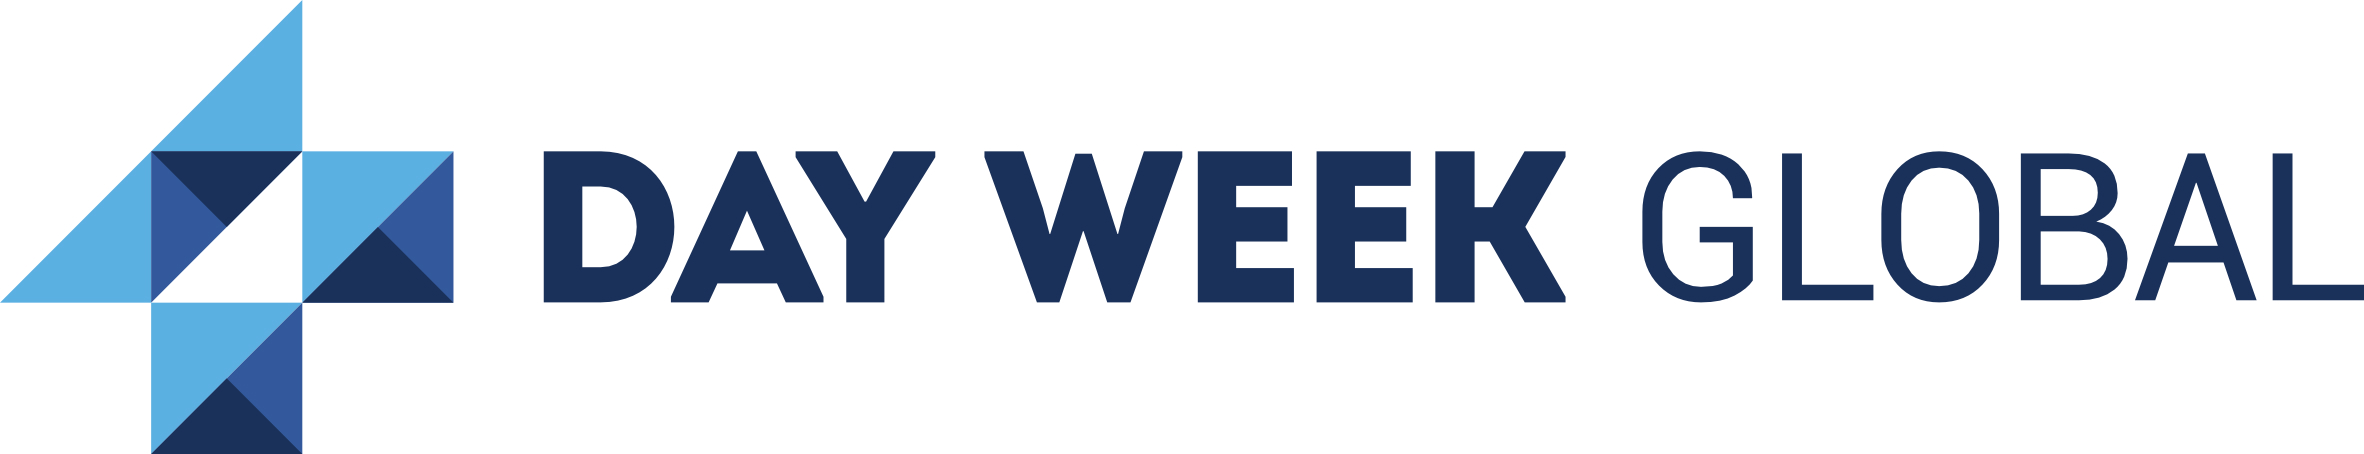 Logo von 4 Day Week Global, dunkelblaue Schrift auf weißem Grund